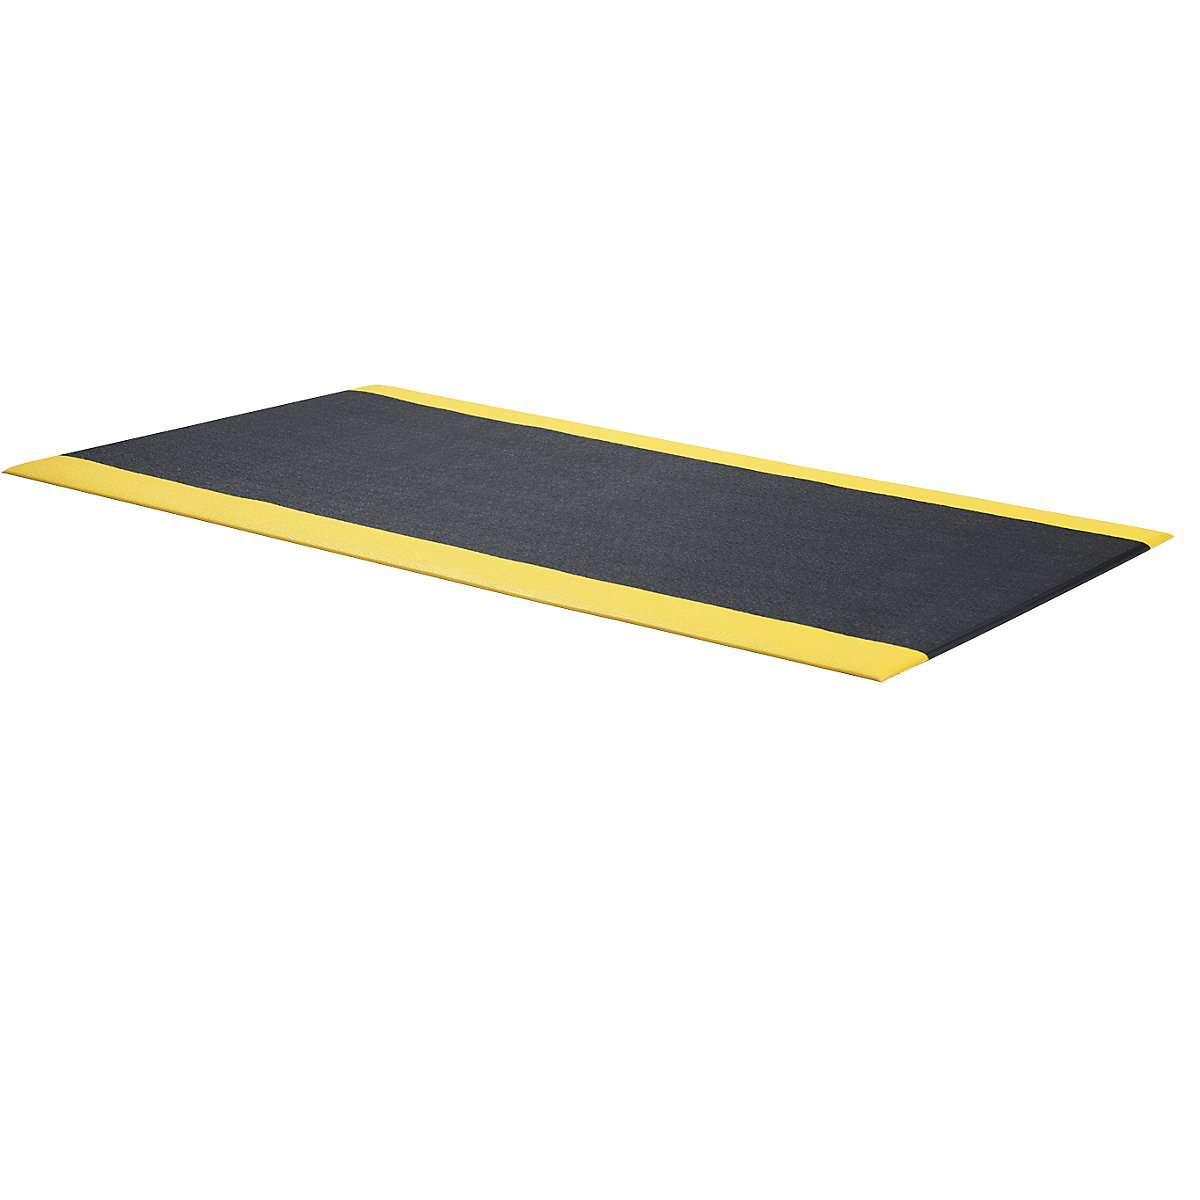 Esteira anticansaço Orthomat®, PVC com aspeto de impacto de martelo, altura 9 mm, 600 x 900 mm, preto/amarelo